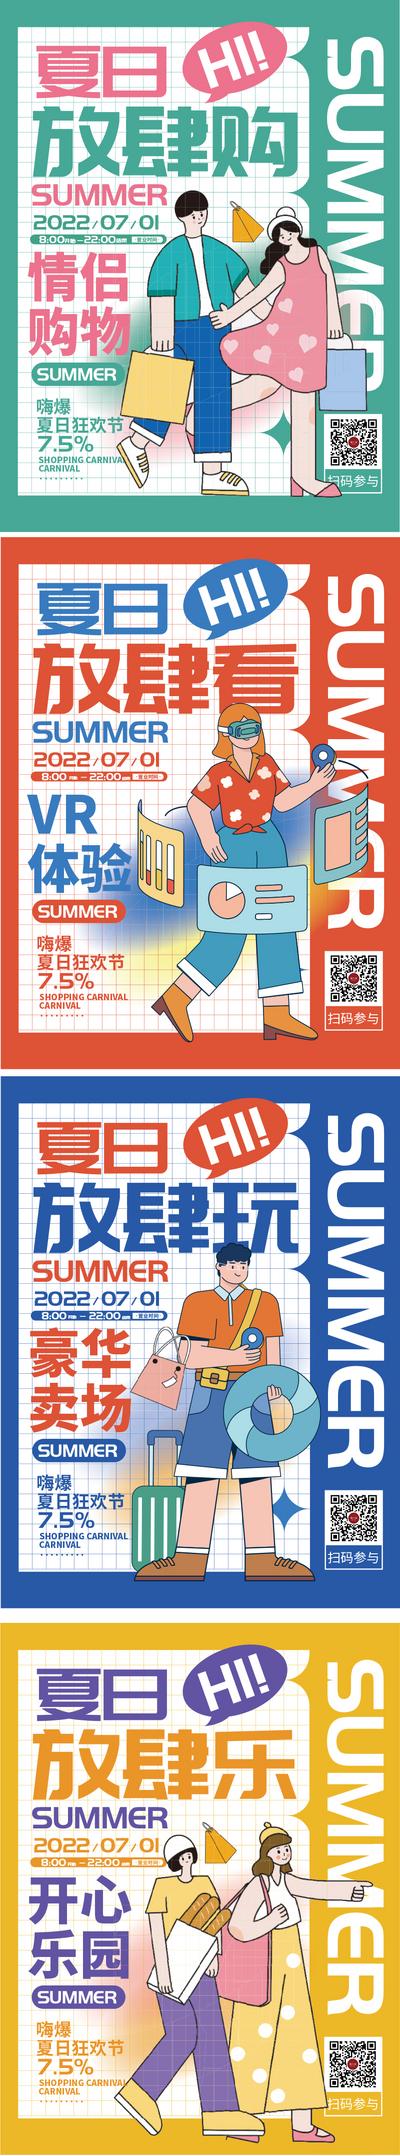 南门网 海报 商业 超市 夏日 促销 购物 活动 扁平化 插画 系列